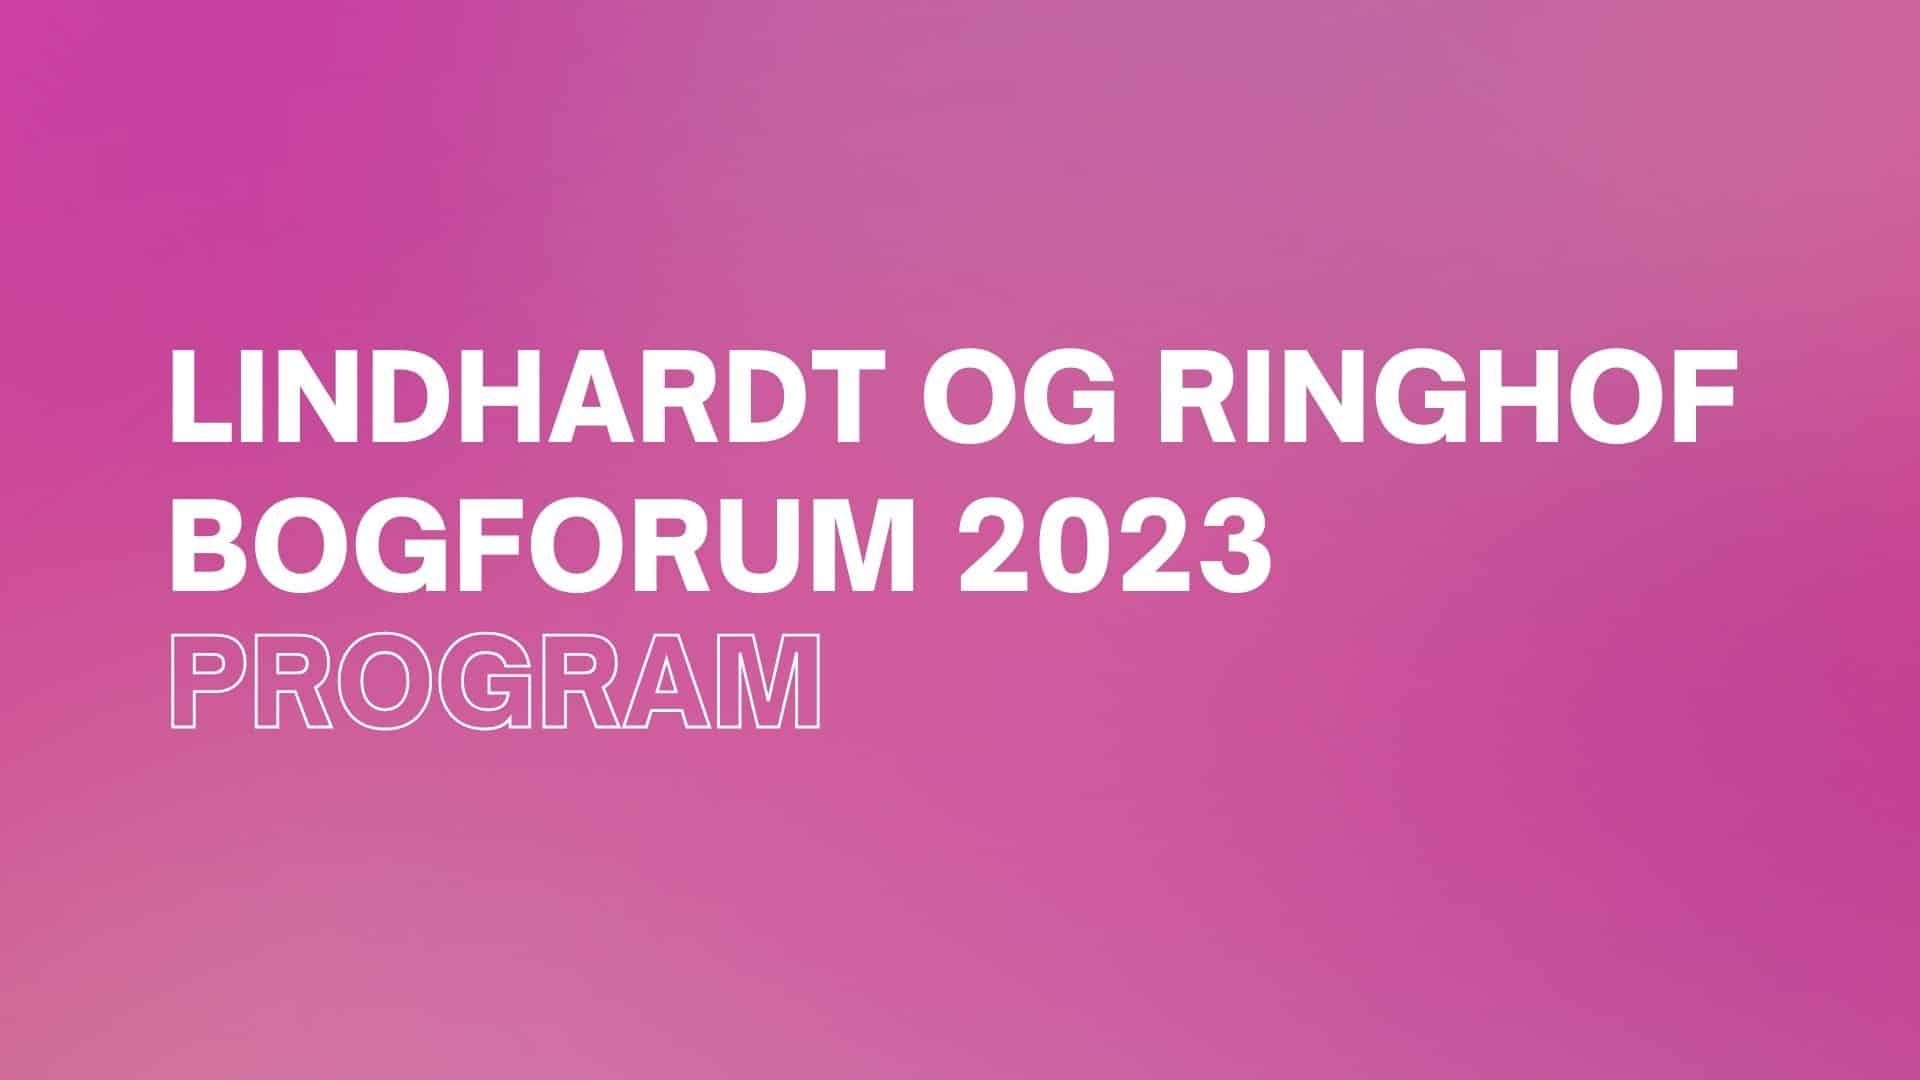 Bogforum 2023, program, Lindhardt og Ringhof